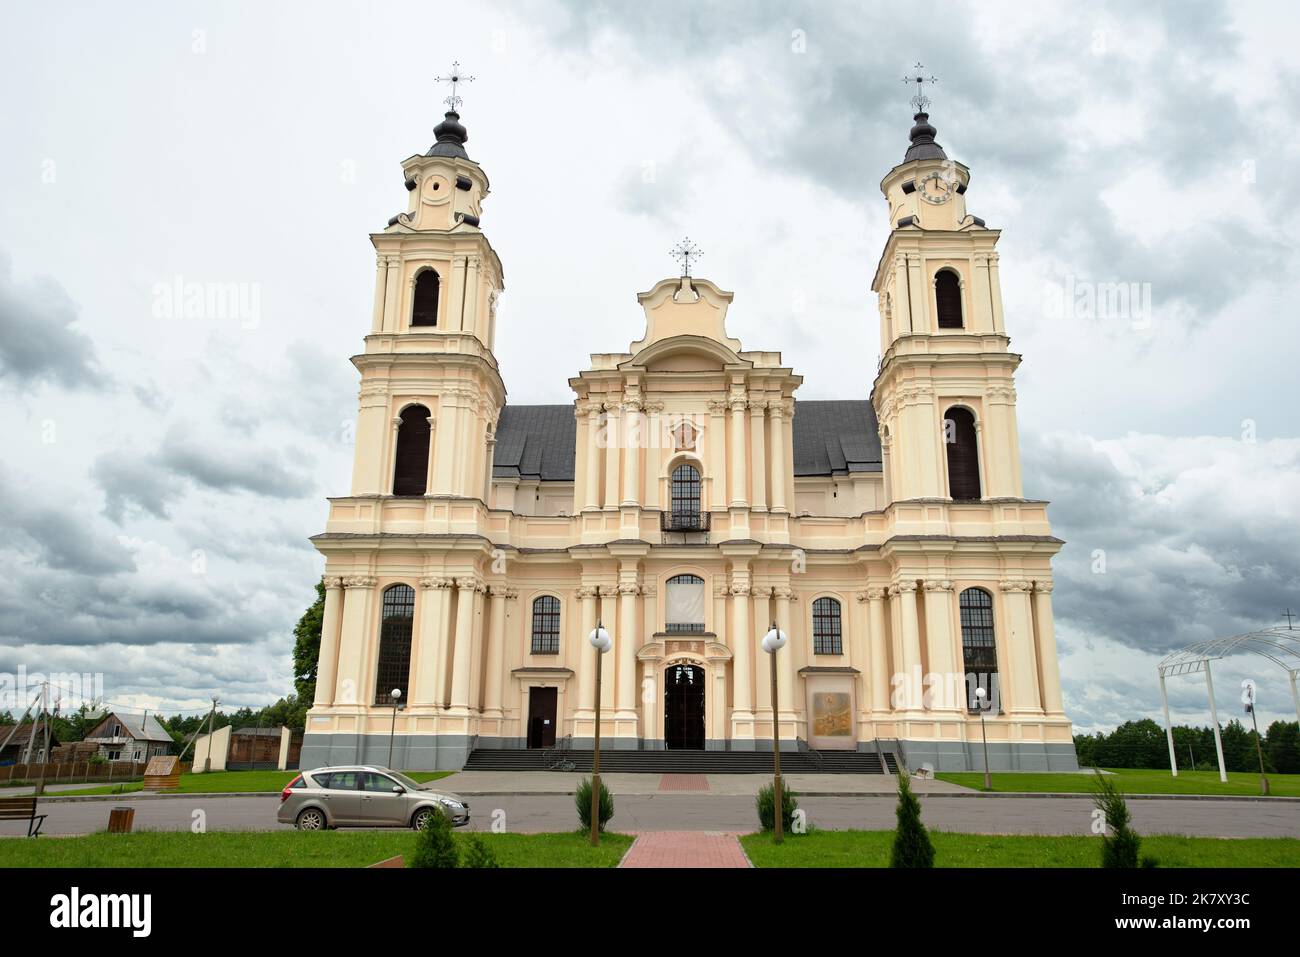 Baudenkmäler, touristische Zentren und interessante Orte in Weißrussland - katholische Kirche im Dorf Budslav Stockfoto